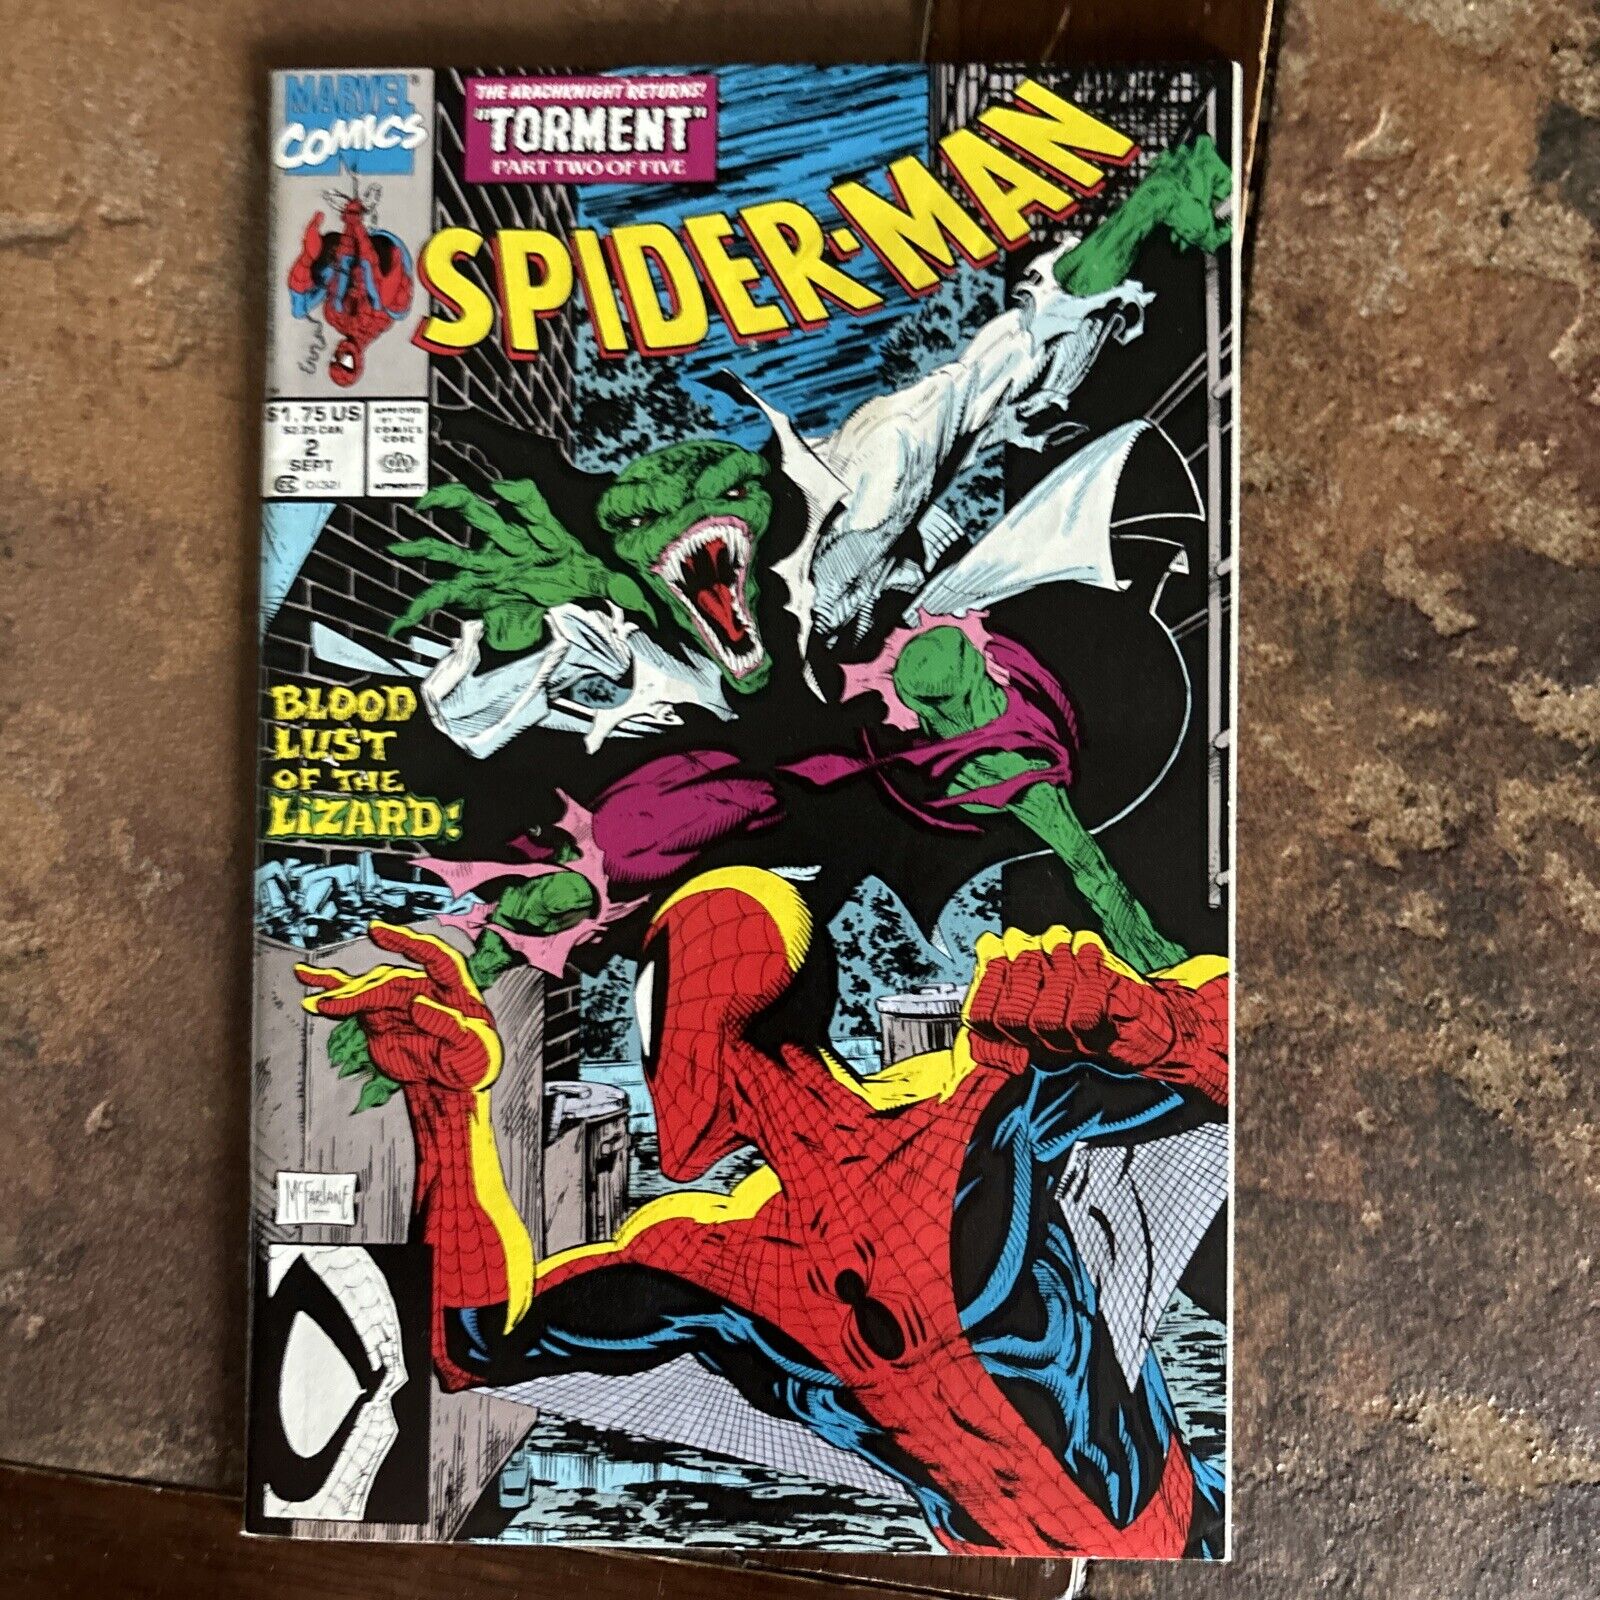 Spider-Man #2 Todd McFarlane Torment Part Two Marvel Comics 1990 NM/M VOL 1